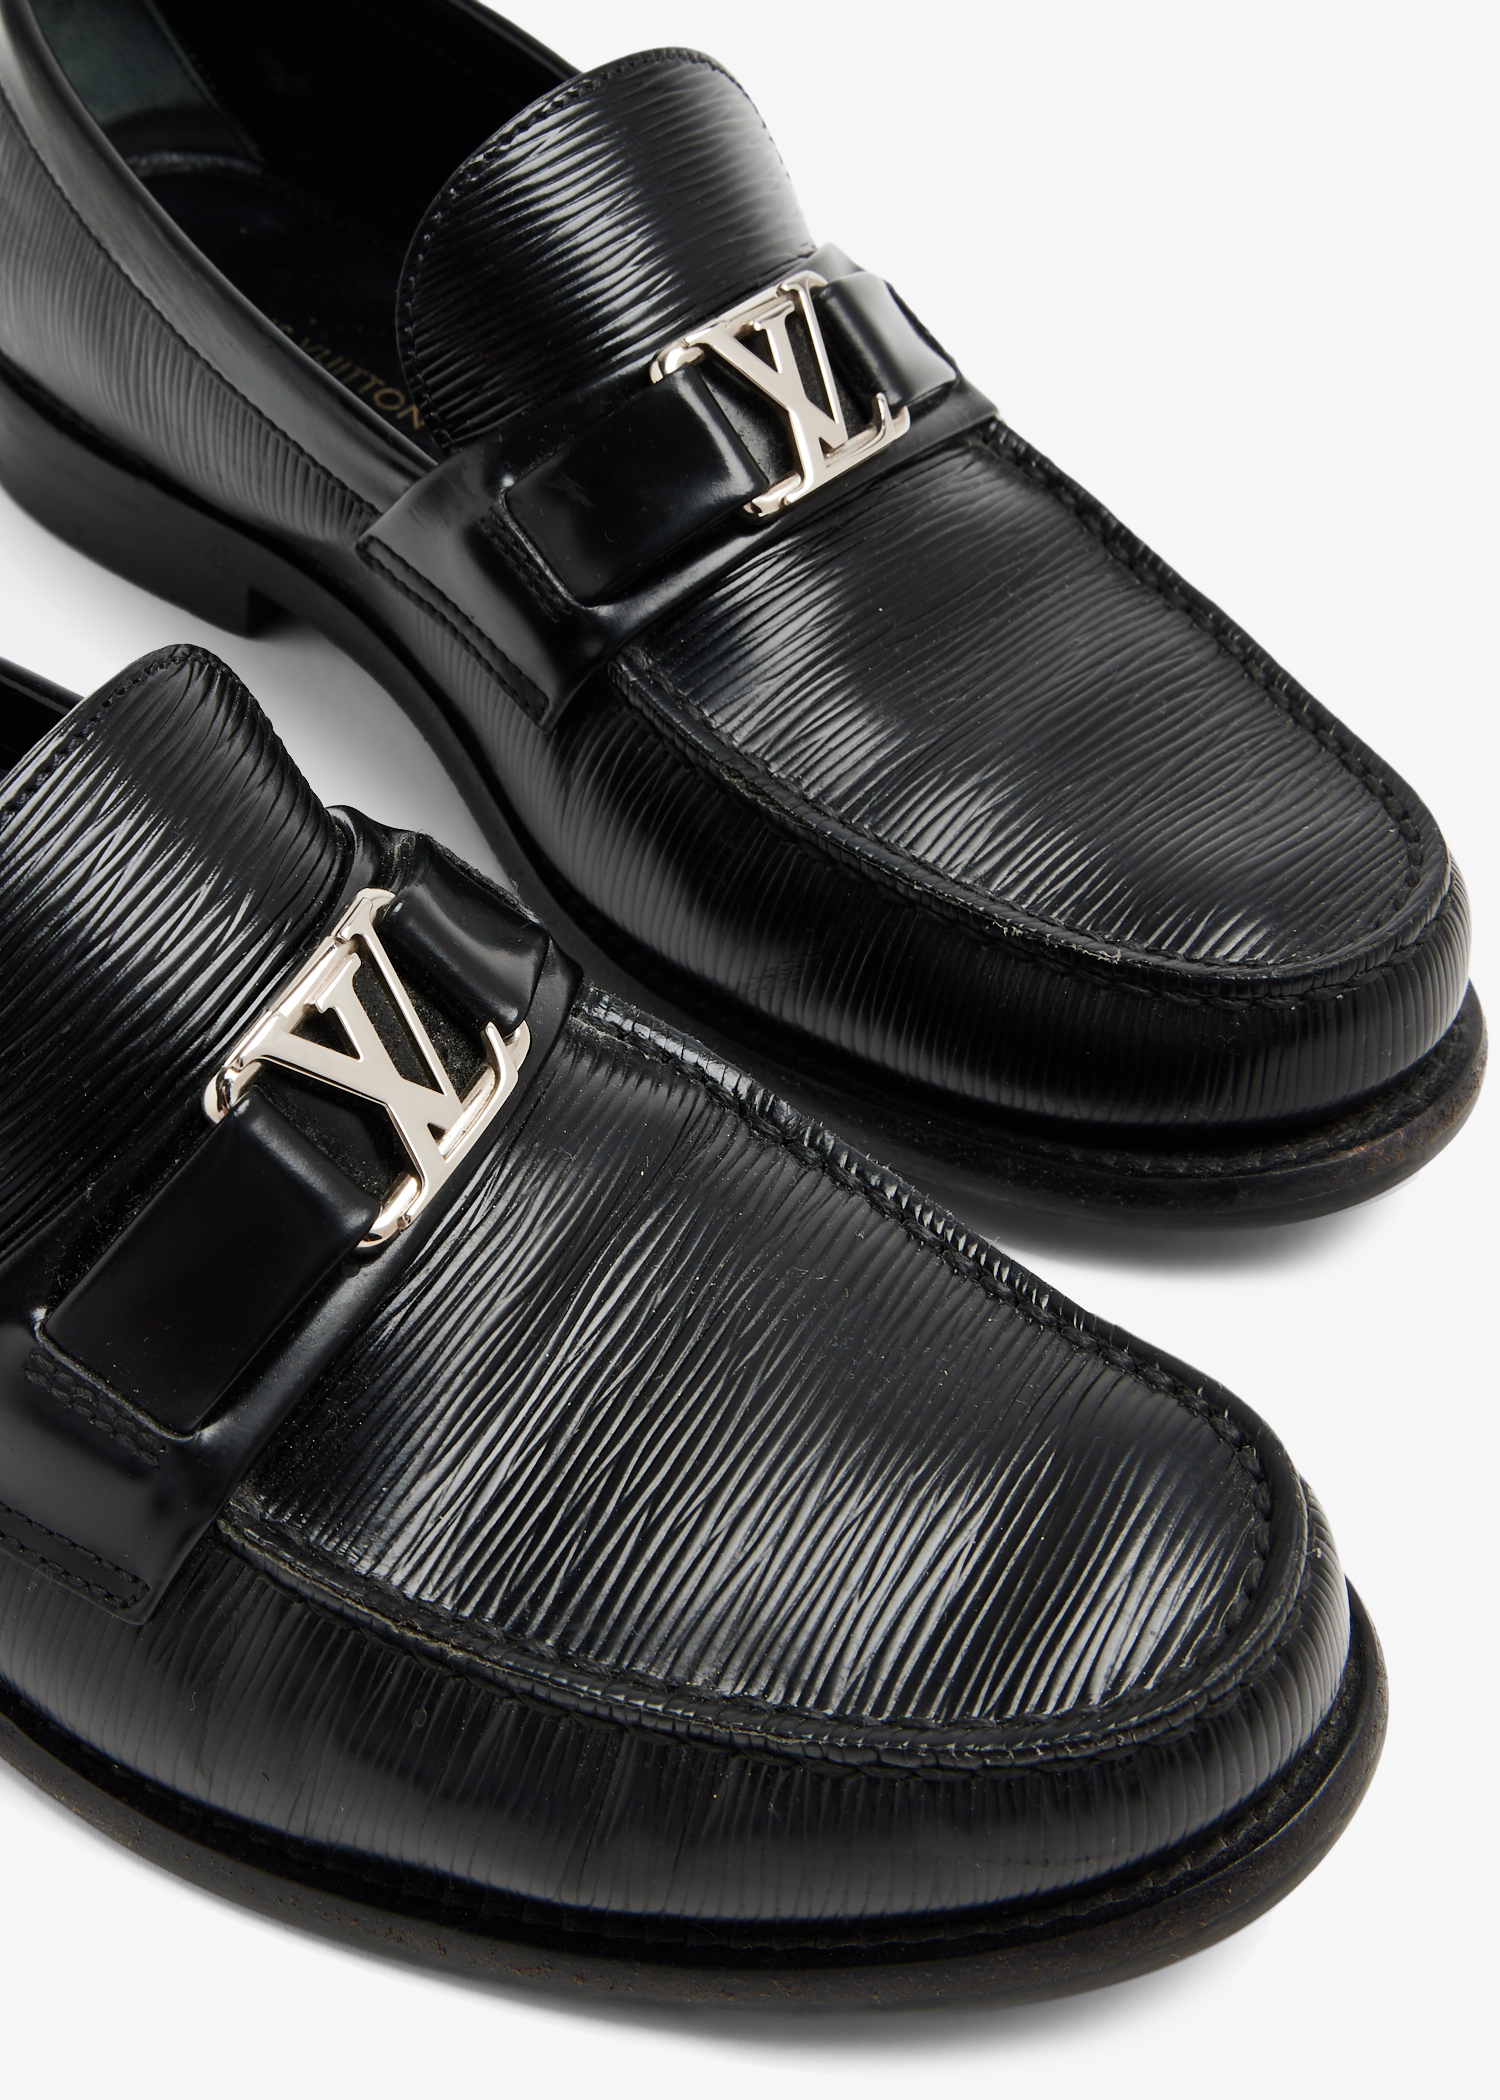 Louis Vuitton Black Epi Leather Major Loafers Size 47 Louis